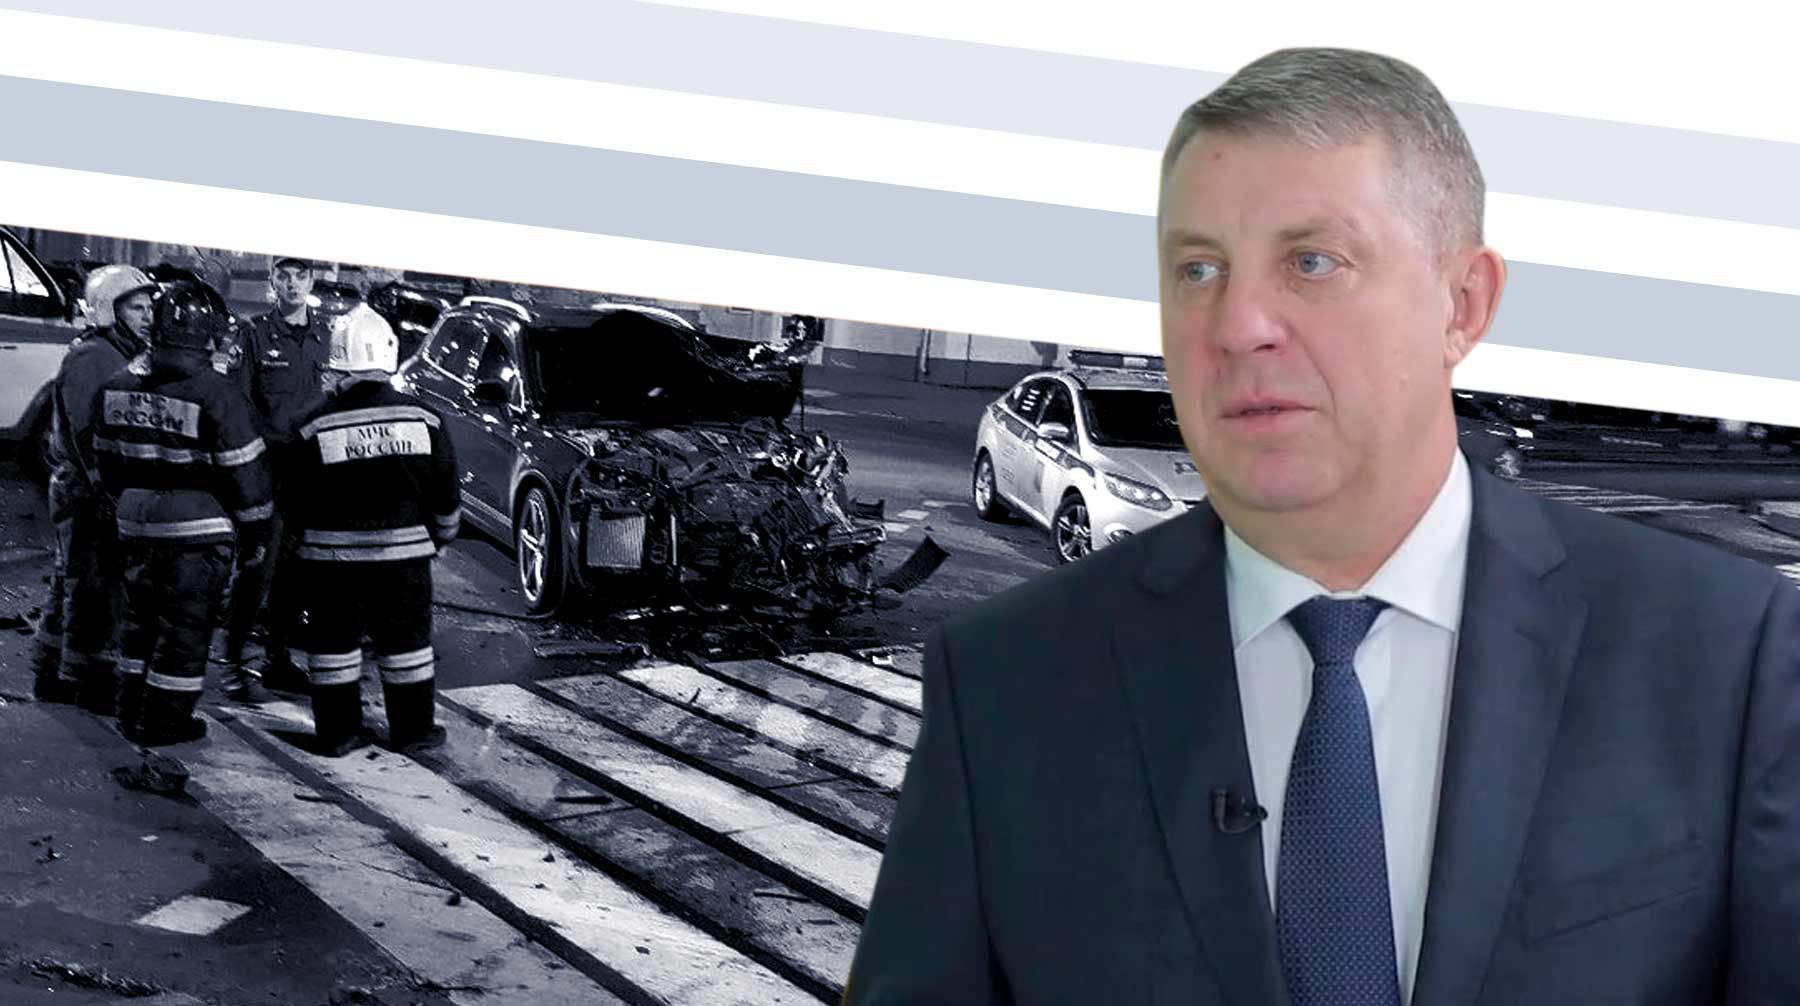 Dailystorm - «Машина была не его»: глава Брянской области раскрыл детали смертельного ДТП с участием сына вице-губернатора